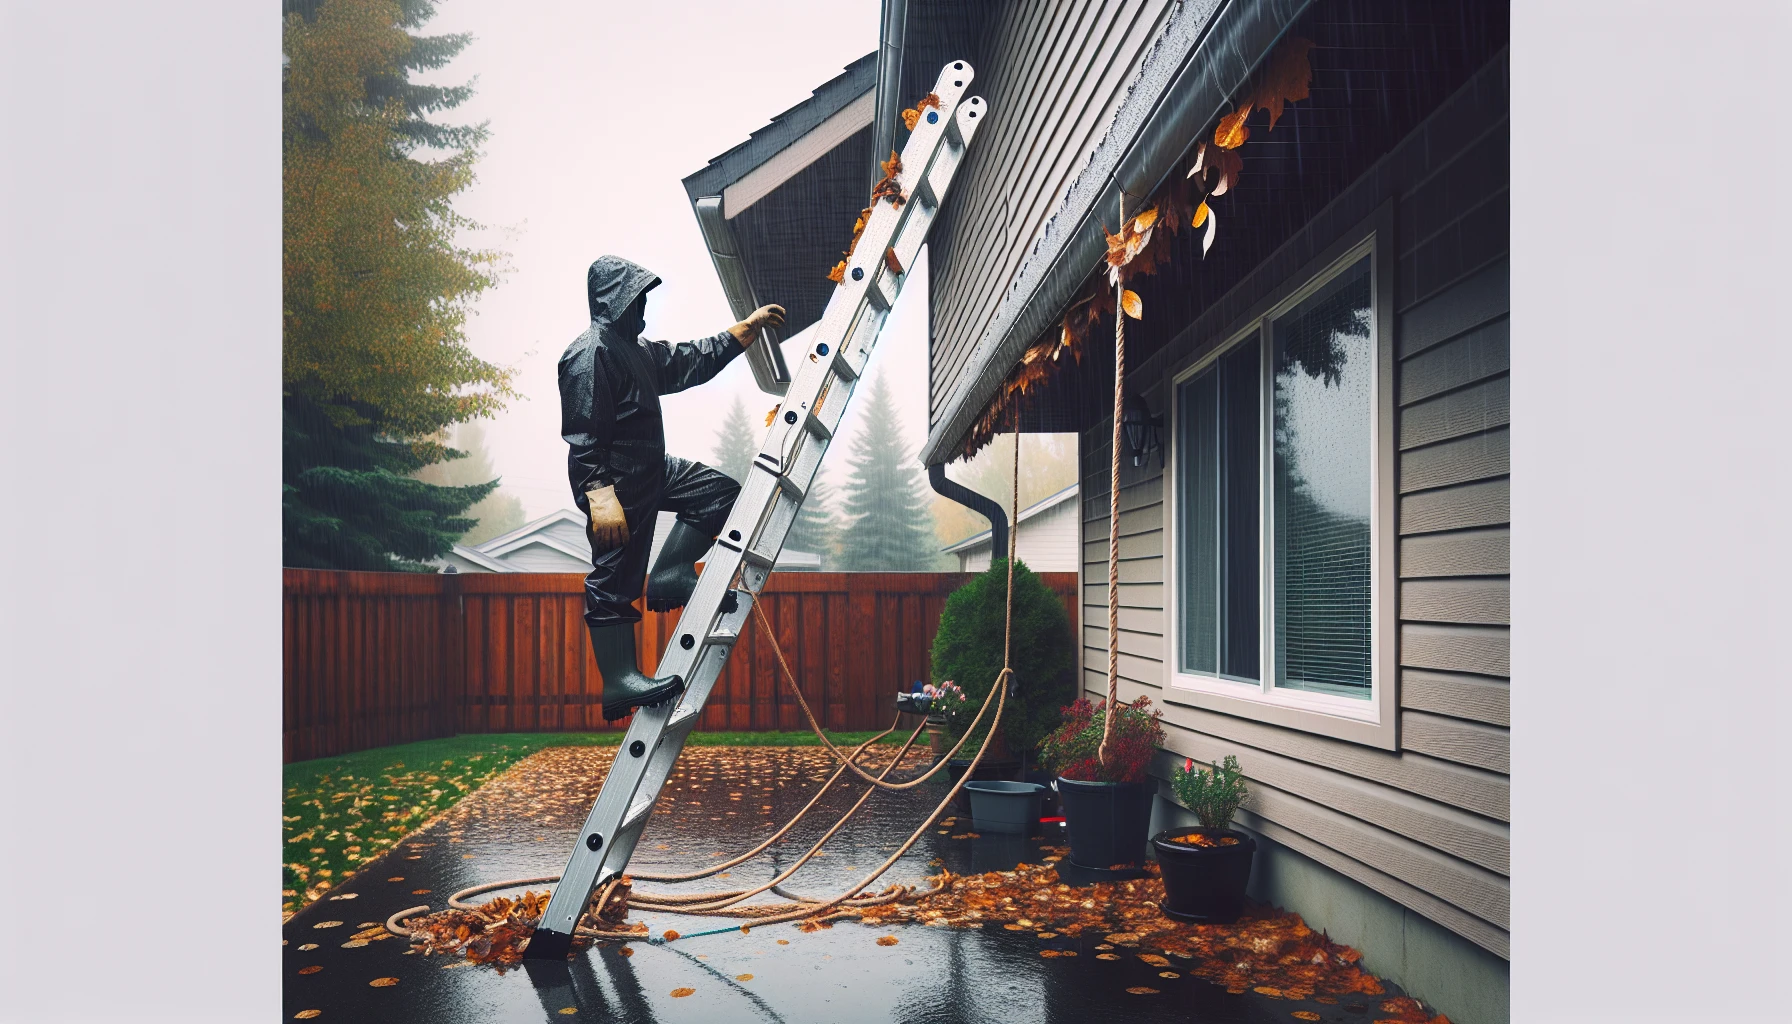 Secure ladder for wet weather gutter maintenance